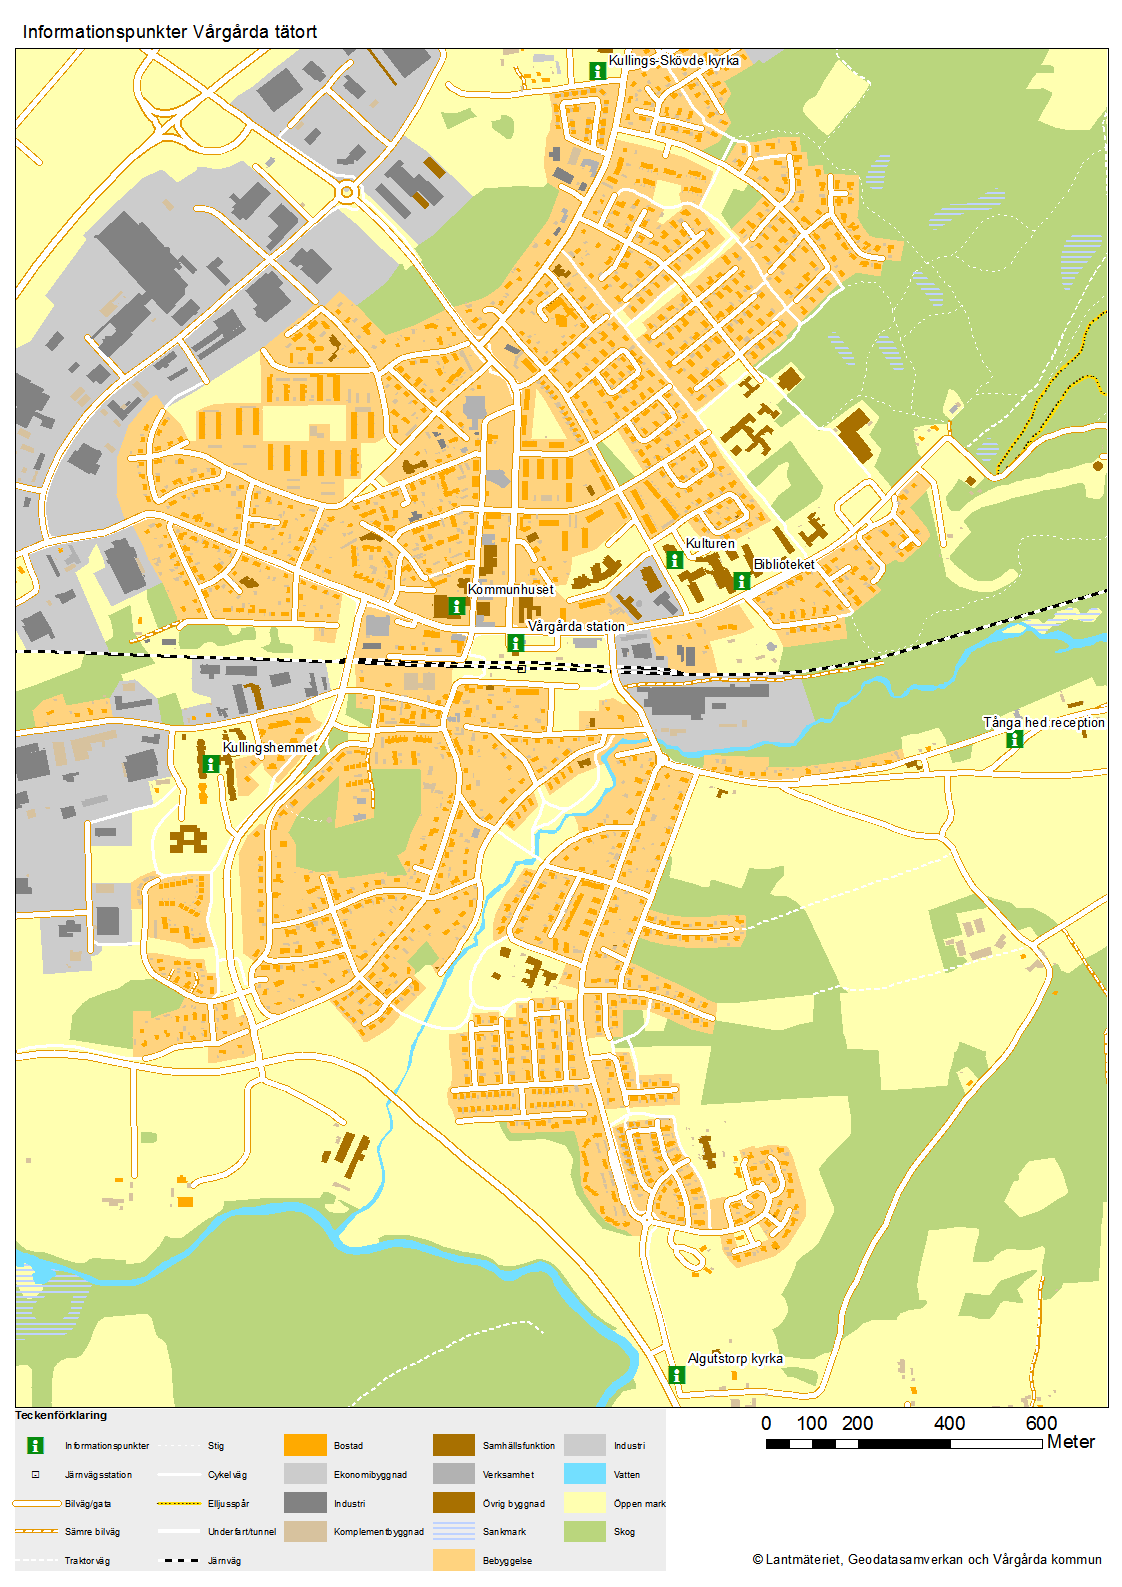 Karta över informationspunkter tätorten i Vårgårda